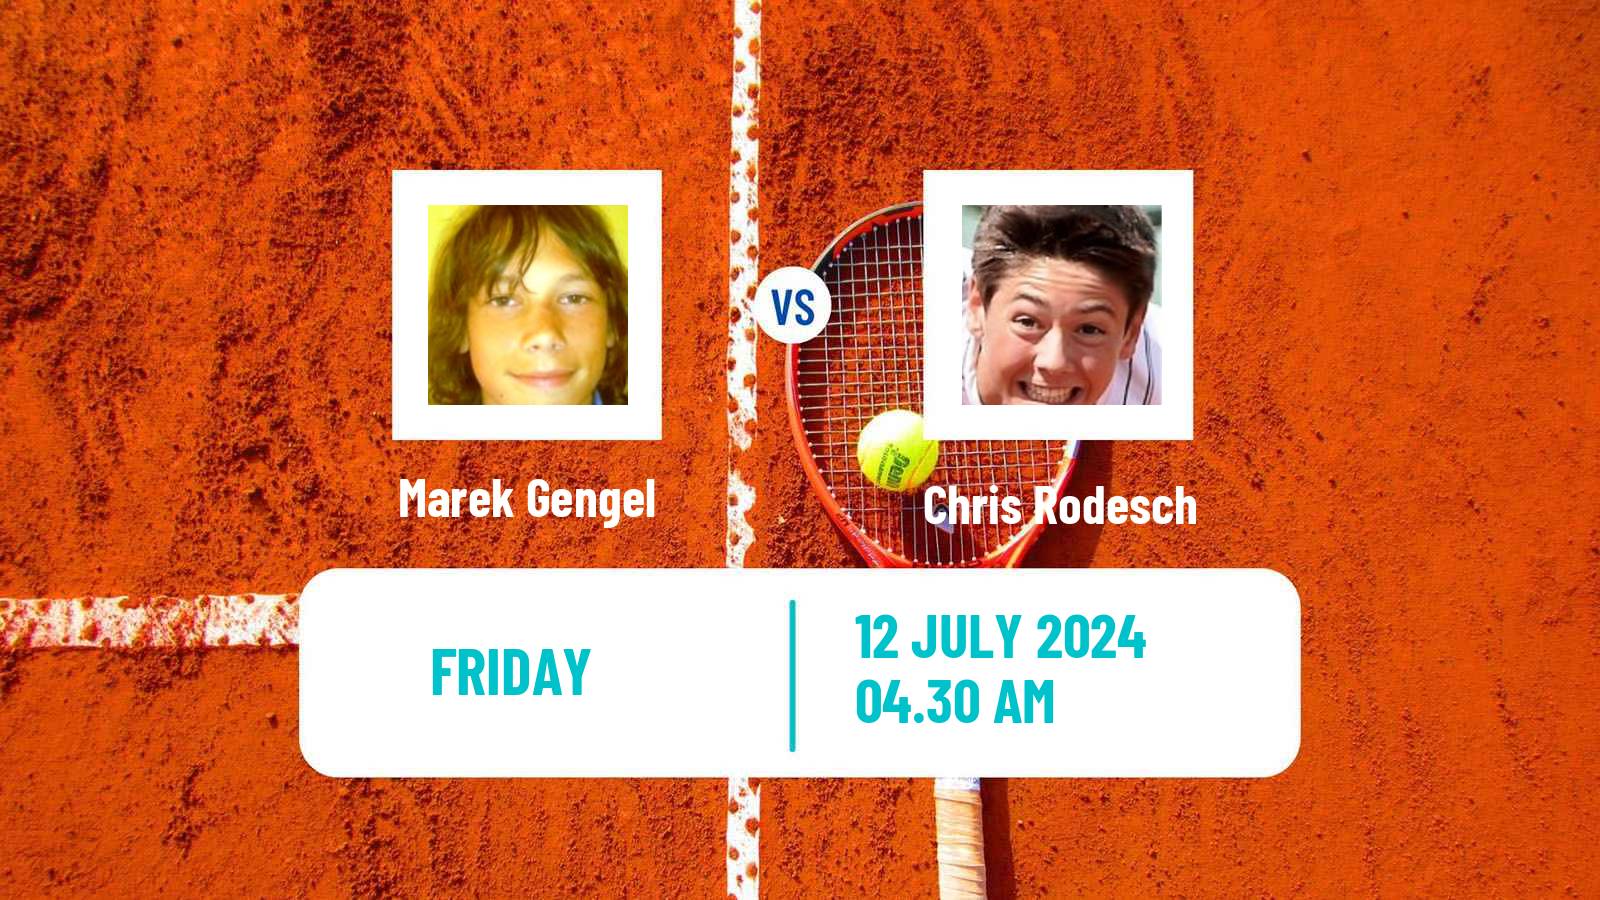 Tennis ITF M15 Lodz Men Marek Gengel - Chris Rodesch